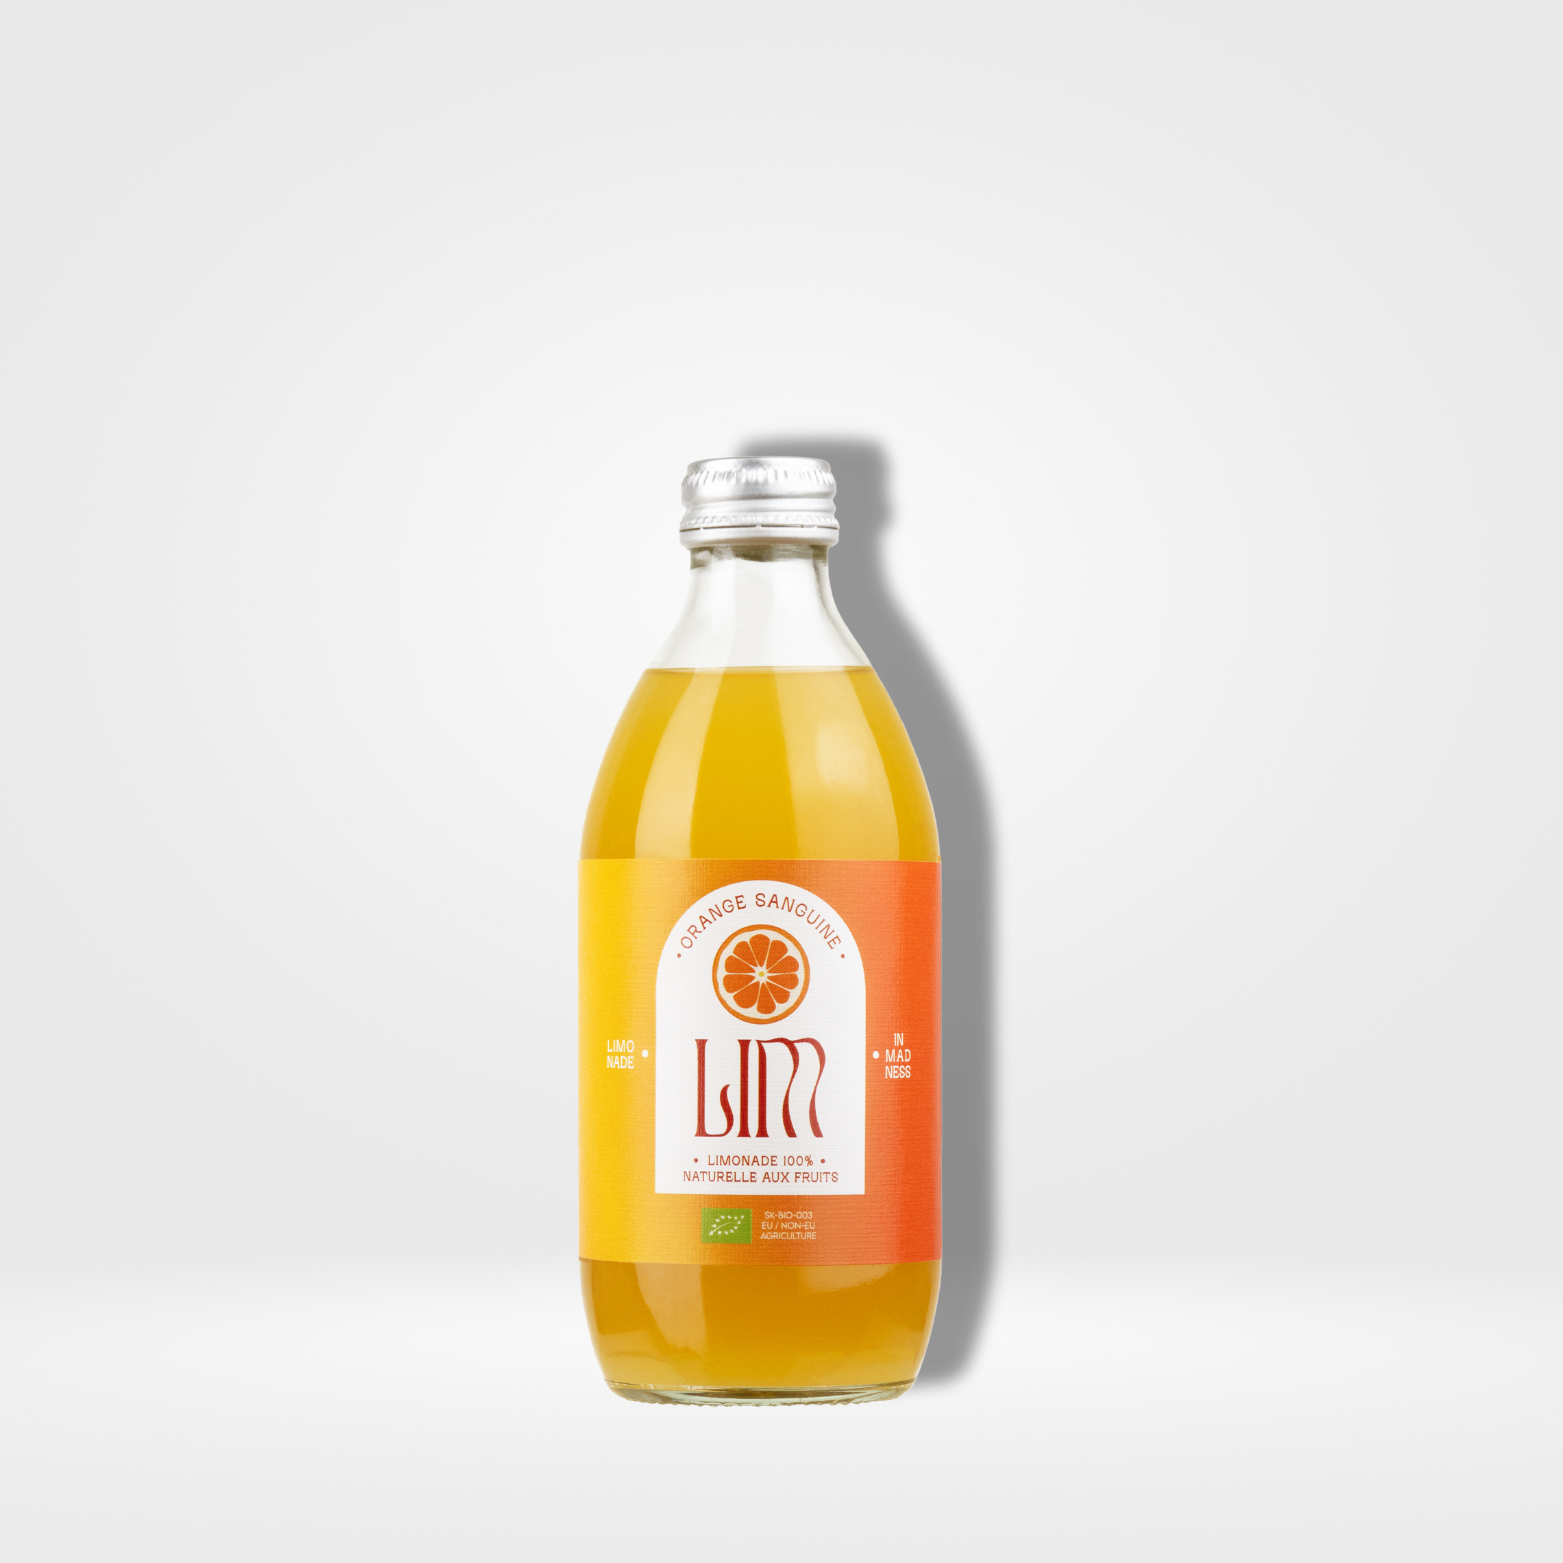 LIM Bio Orange Sanguine verre 12 x 33cl